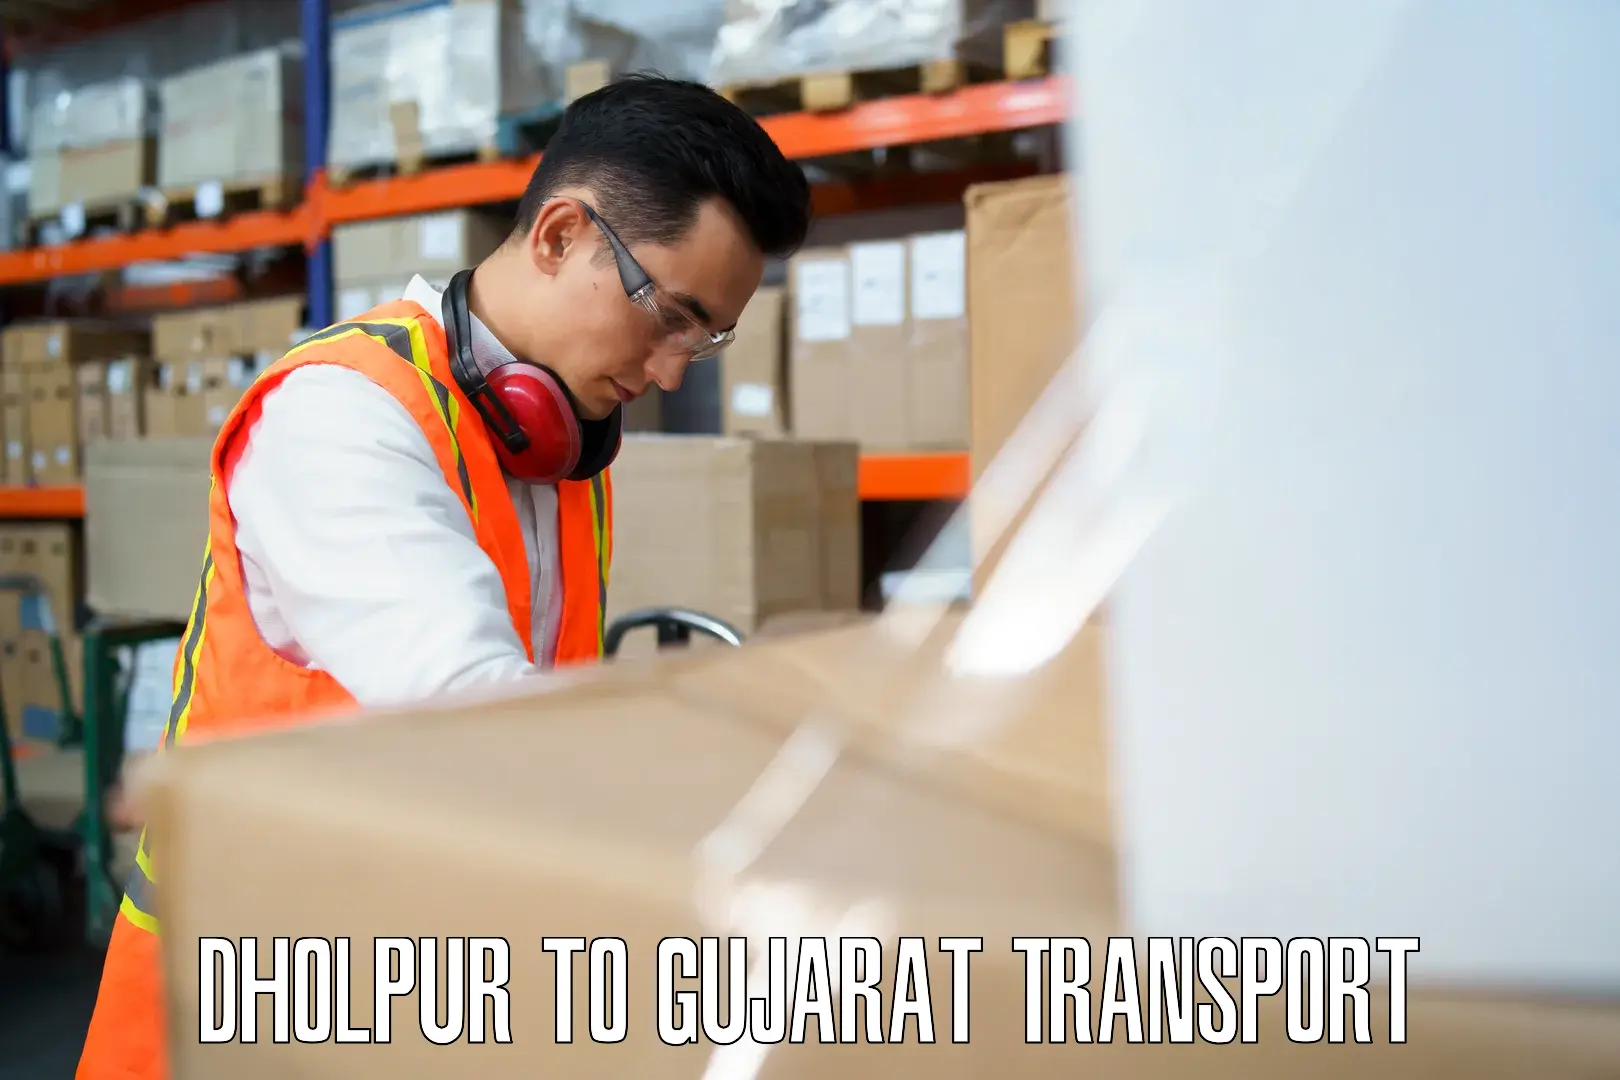 Online transport service Dholpur to Dwarka